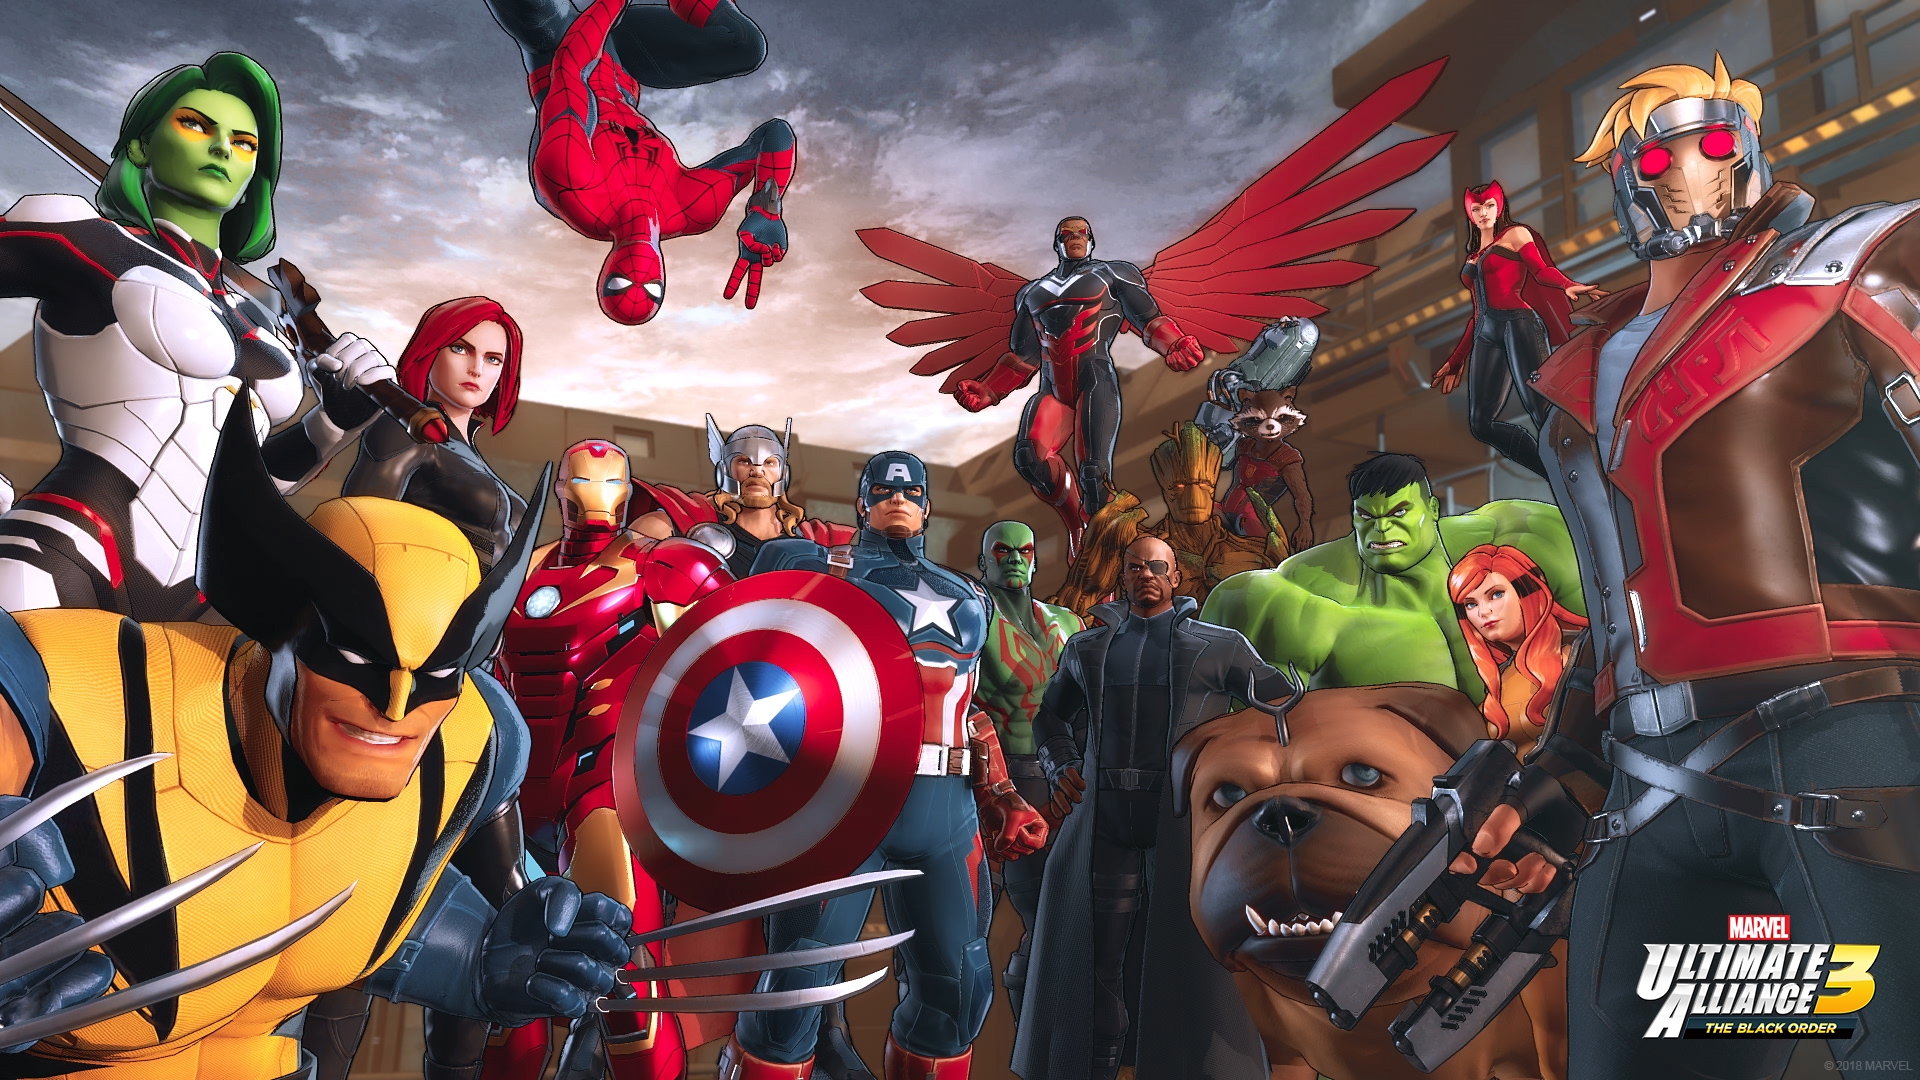 à¸œà¸¥à¸à¸²à¸£à¸„à¹‰à¸™à¸«à¸²à¸£à¸¹à¸›à¸ à¸²à¸žà¸ªà¸³à¸«à¸£à¸±à¸š Marvel Ultimate Alliance 3: The Black Order